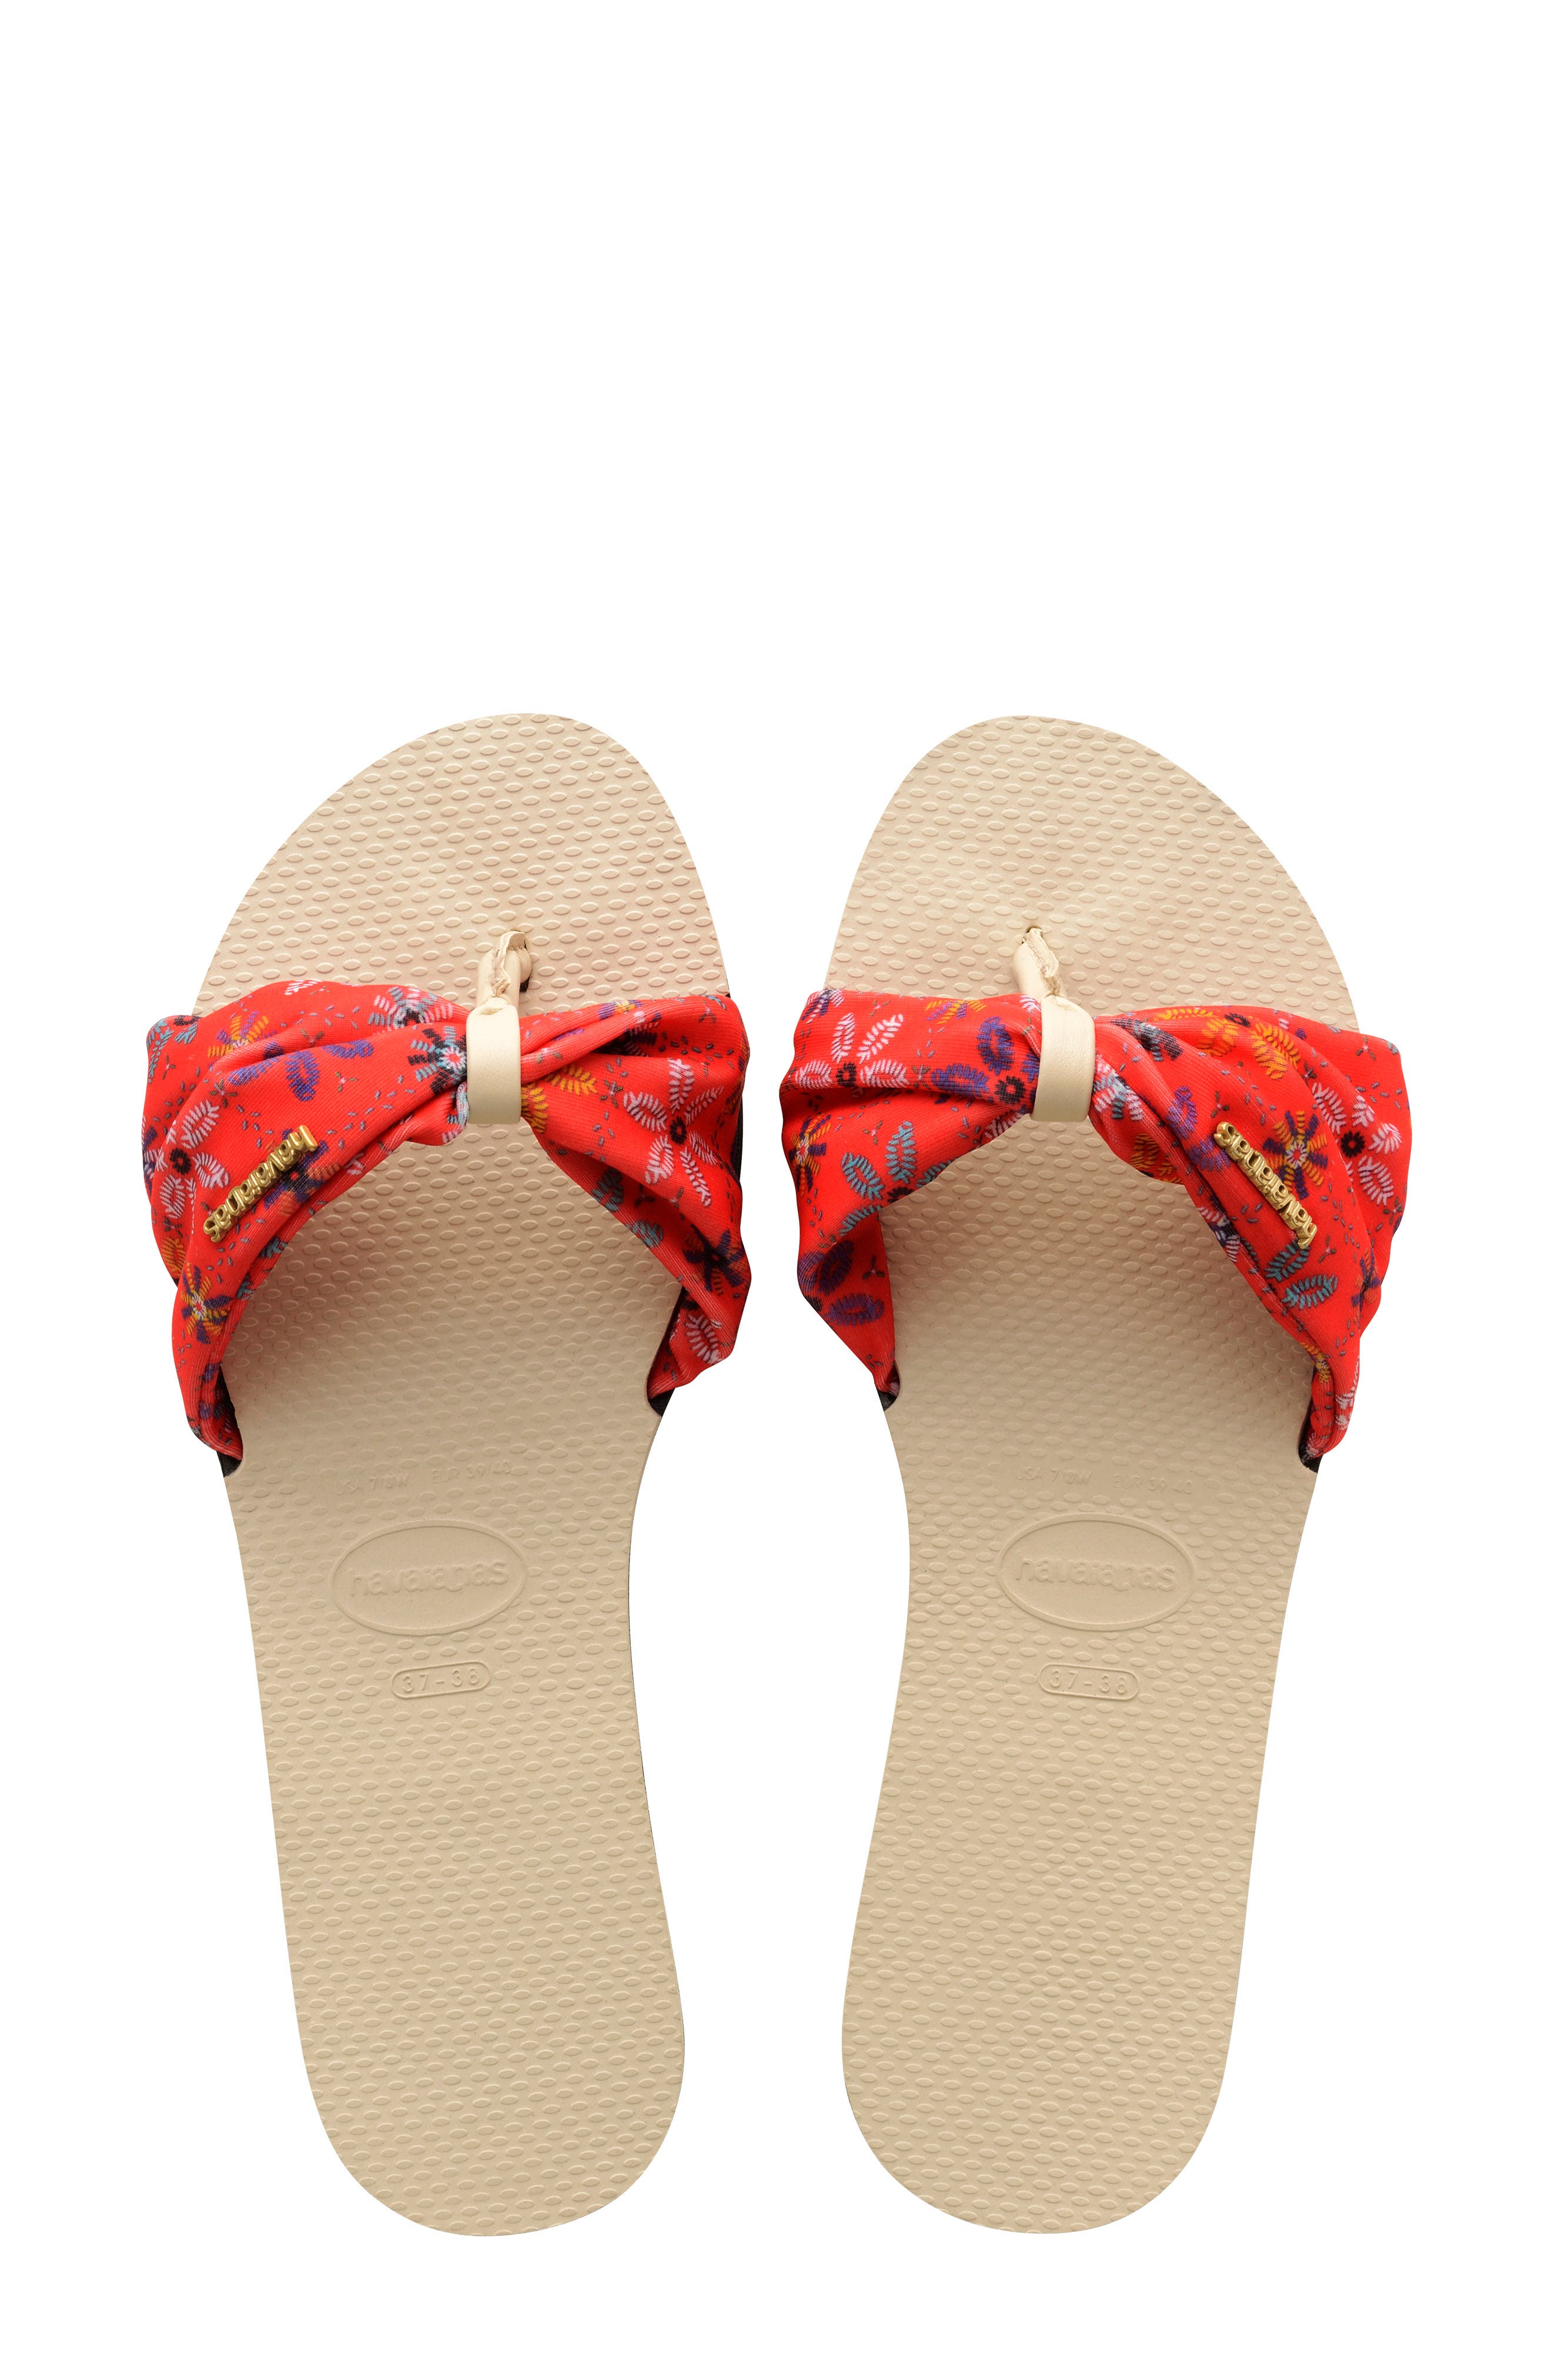 Women's Havaianas Sandals and Flip 